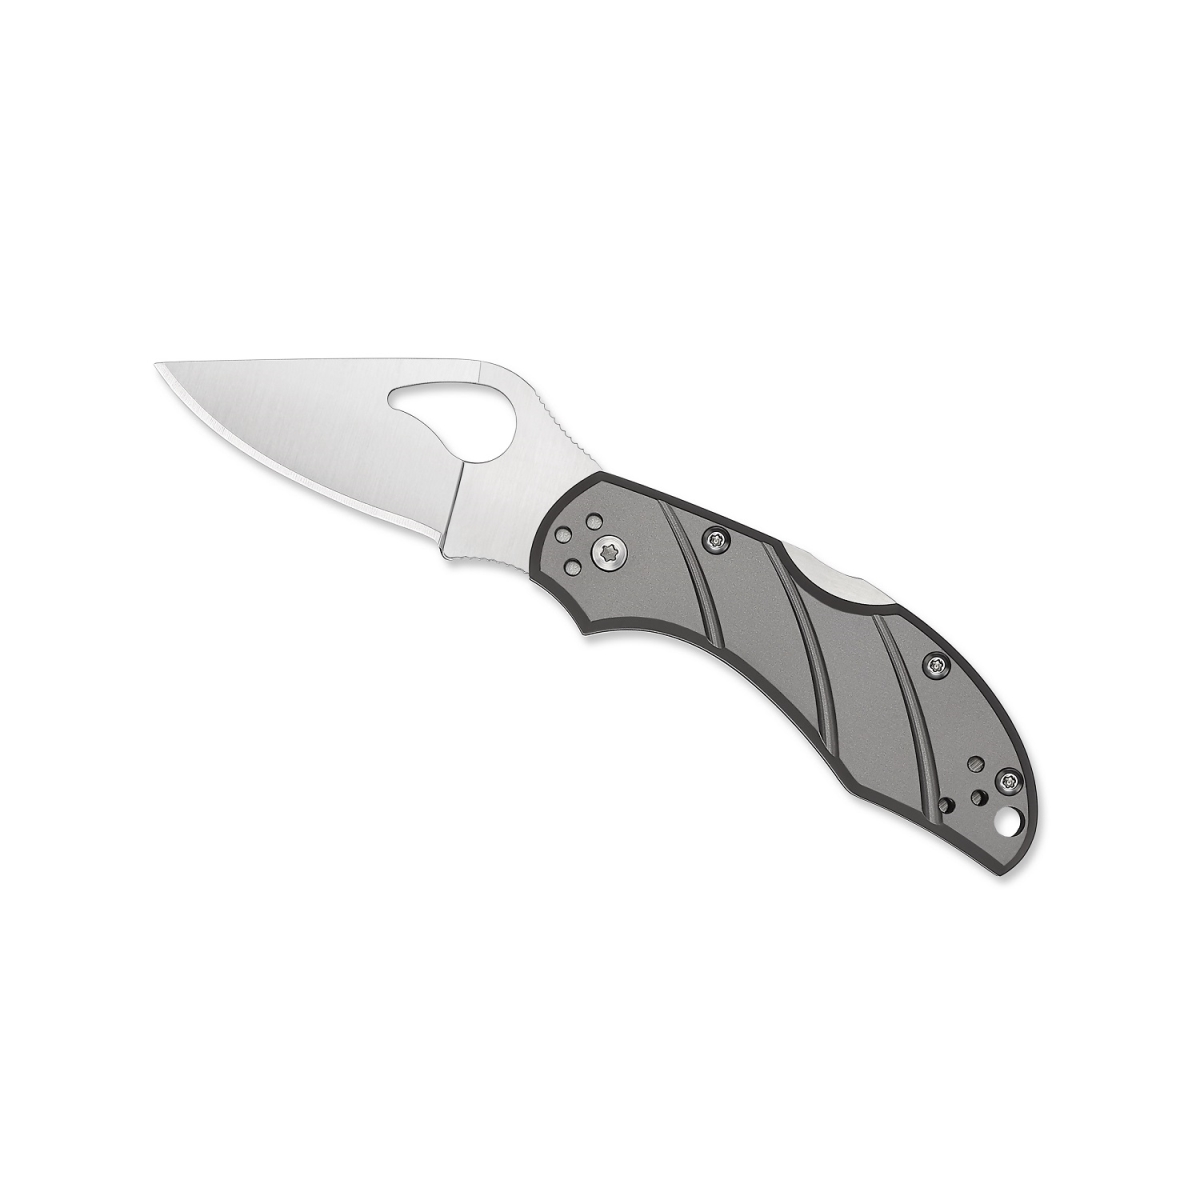 4013217 2.5 in. Byrd Robin 2 Folding Knife Blade - Titanium